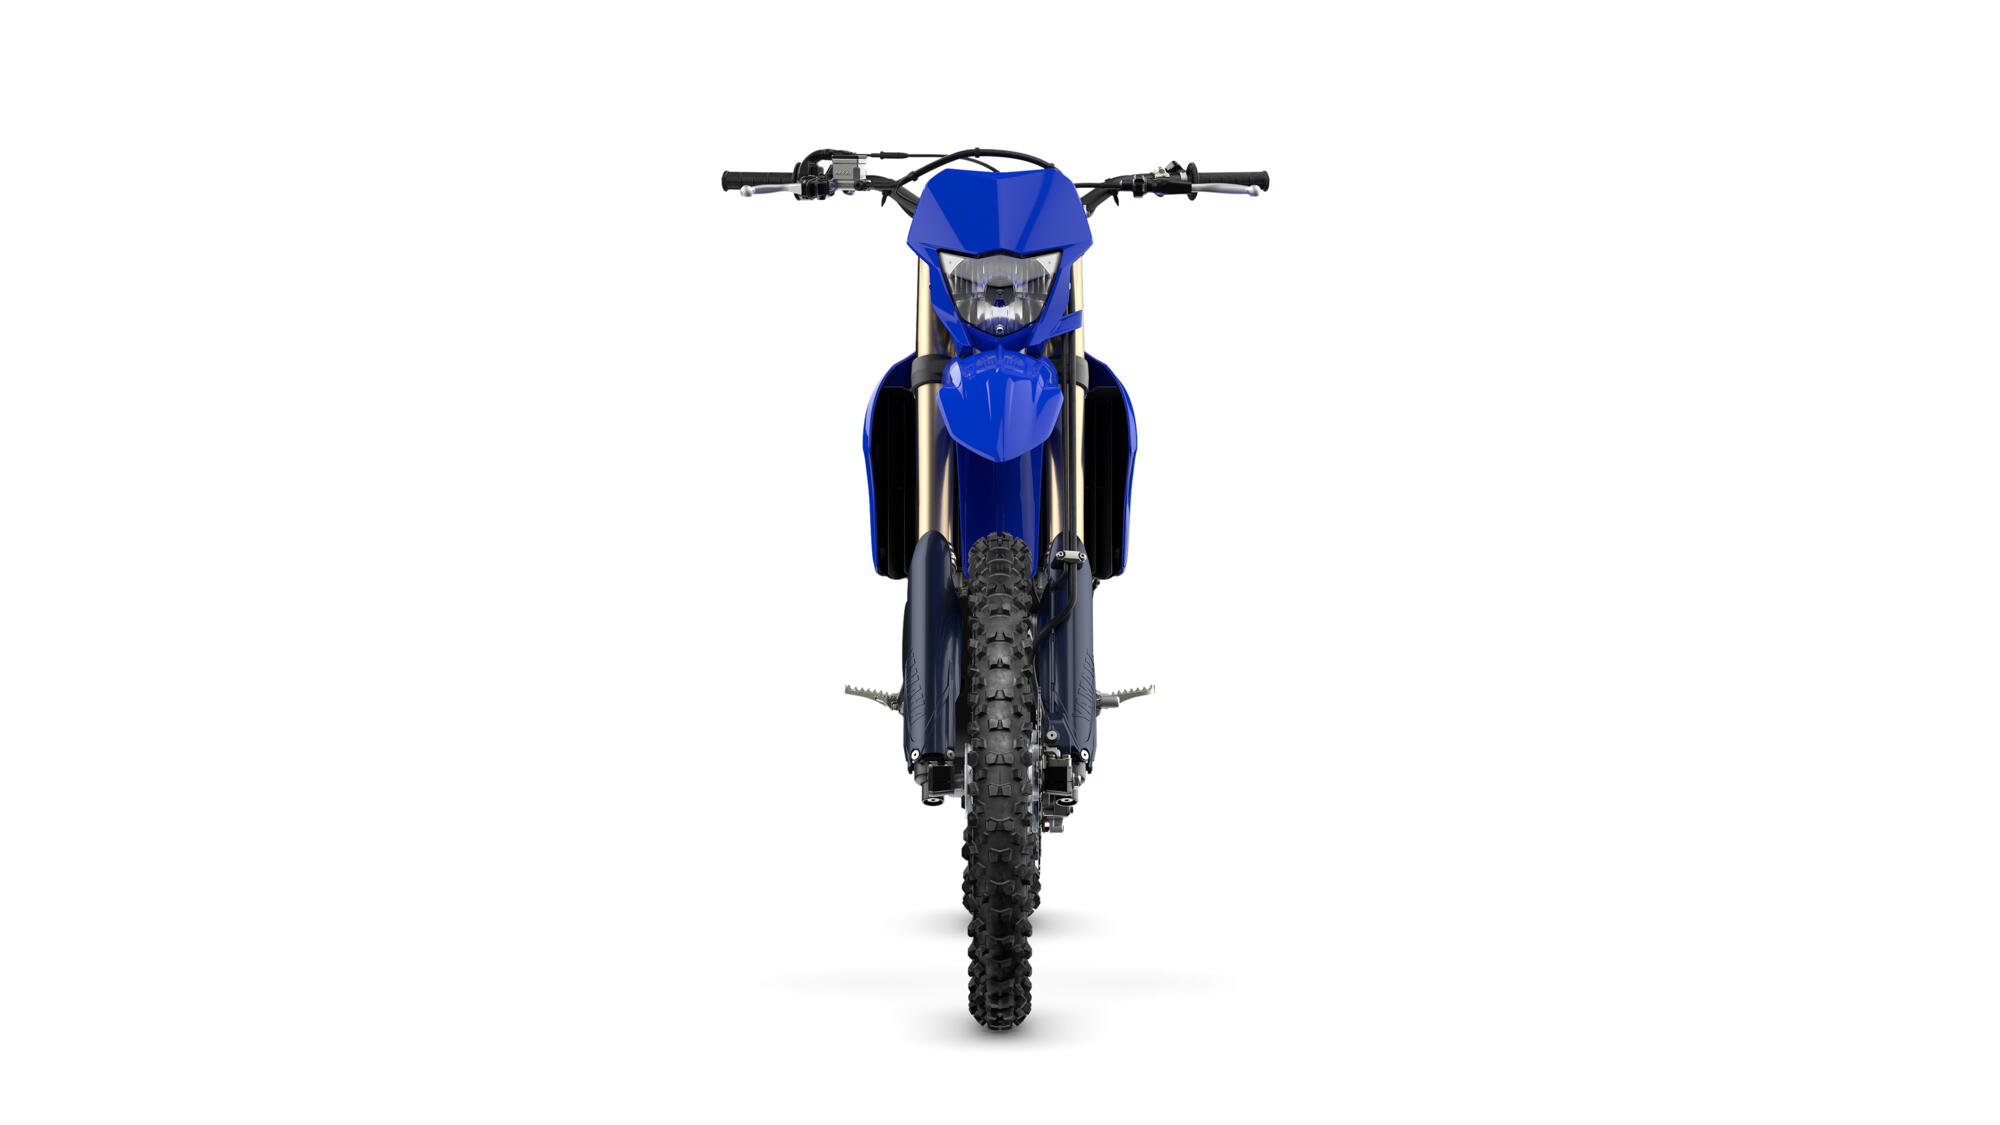 Yamaha WR450F 2023: Preço, Potência, Ficha Técnica e Fotos em 2023